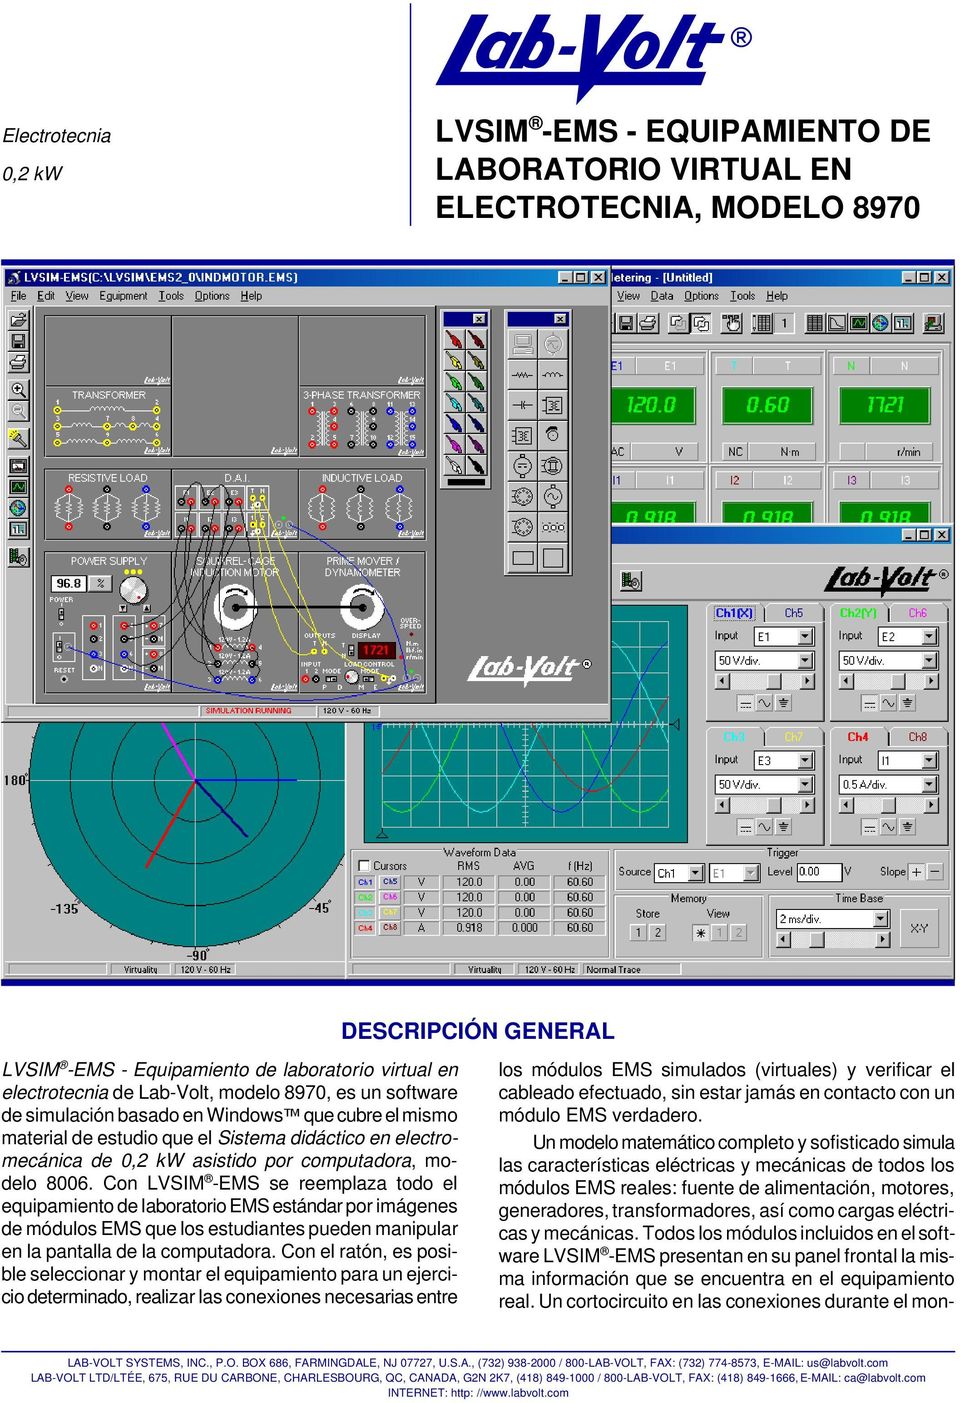 Con LVSIM -EMS se reemplaza todo el equipamiento de laboratorio EMS estándar por imágenes de módulos EMS que los estudiantes pueden manipular en la pantalla de la computadora.